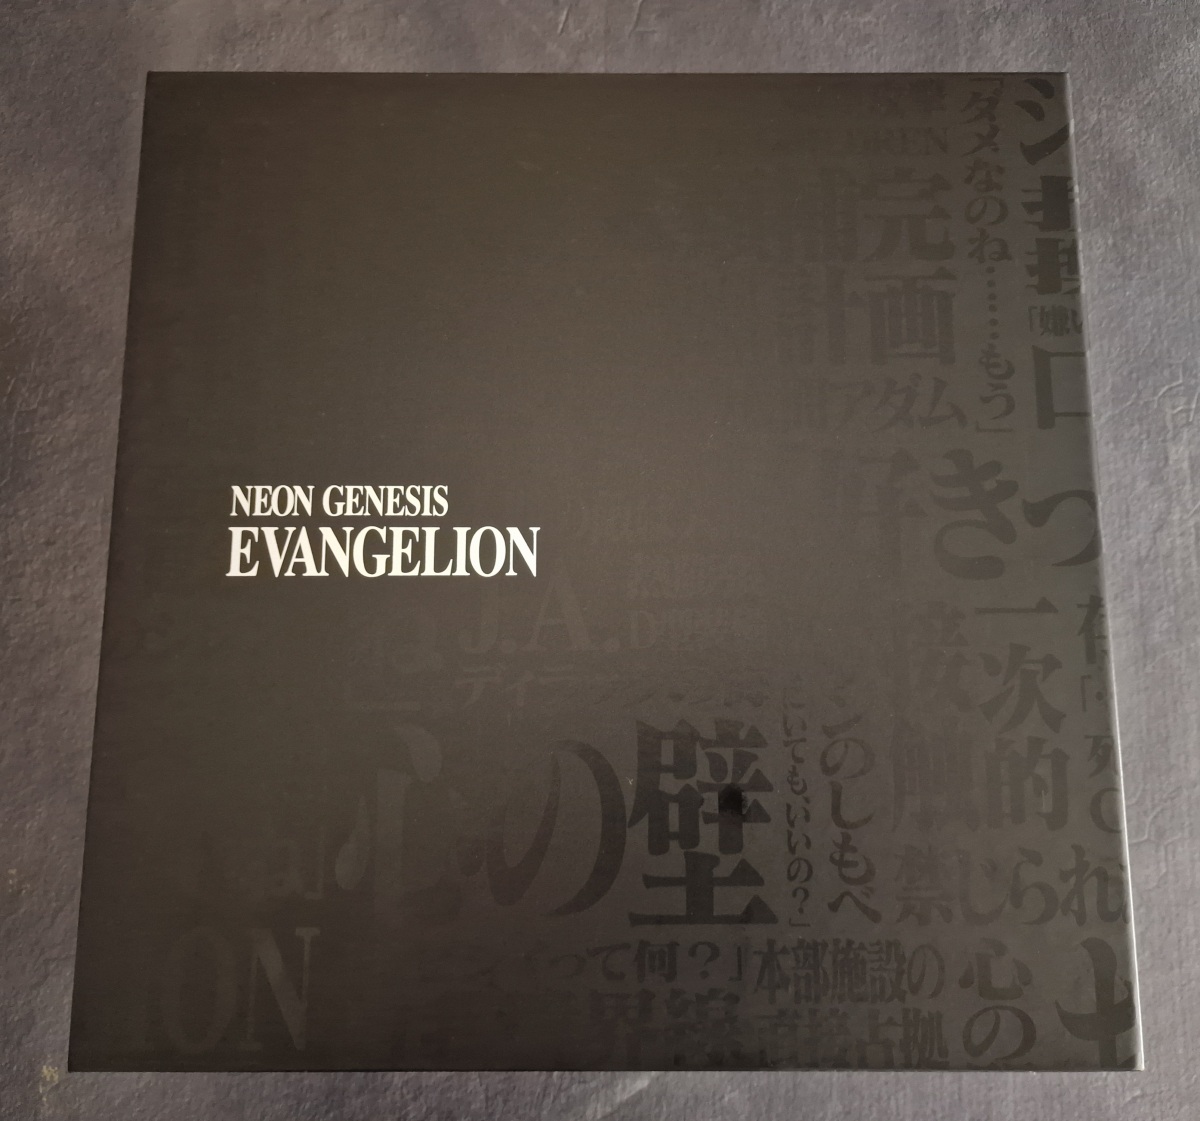 Abriendo la edición de Coleccionista de Neon Genesis Evangelion